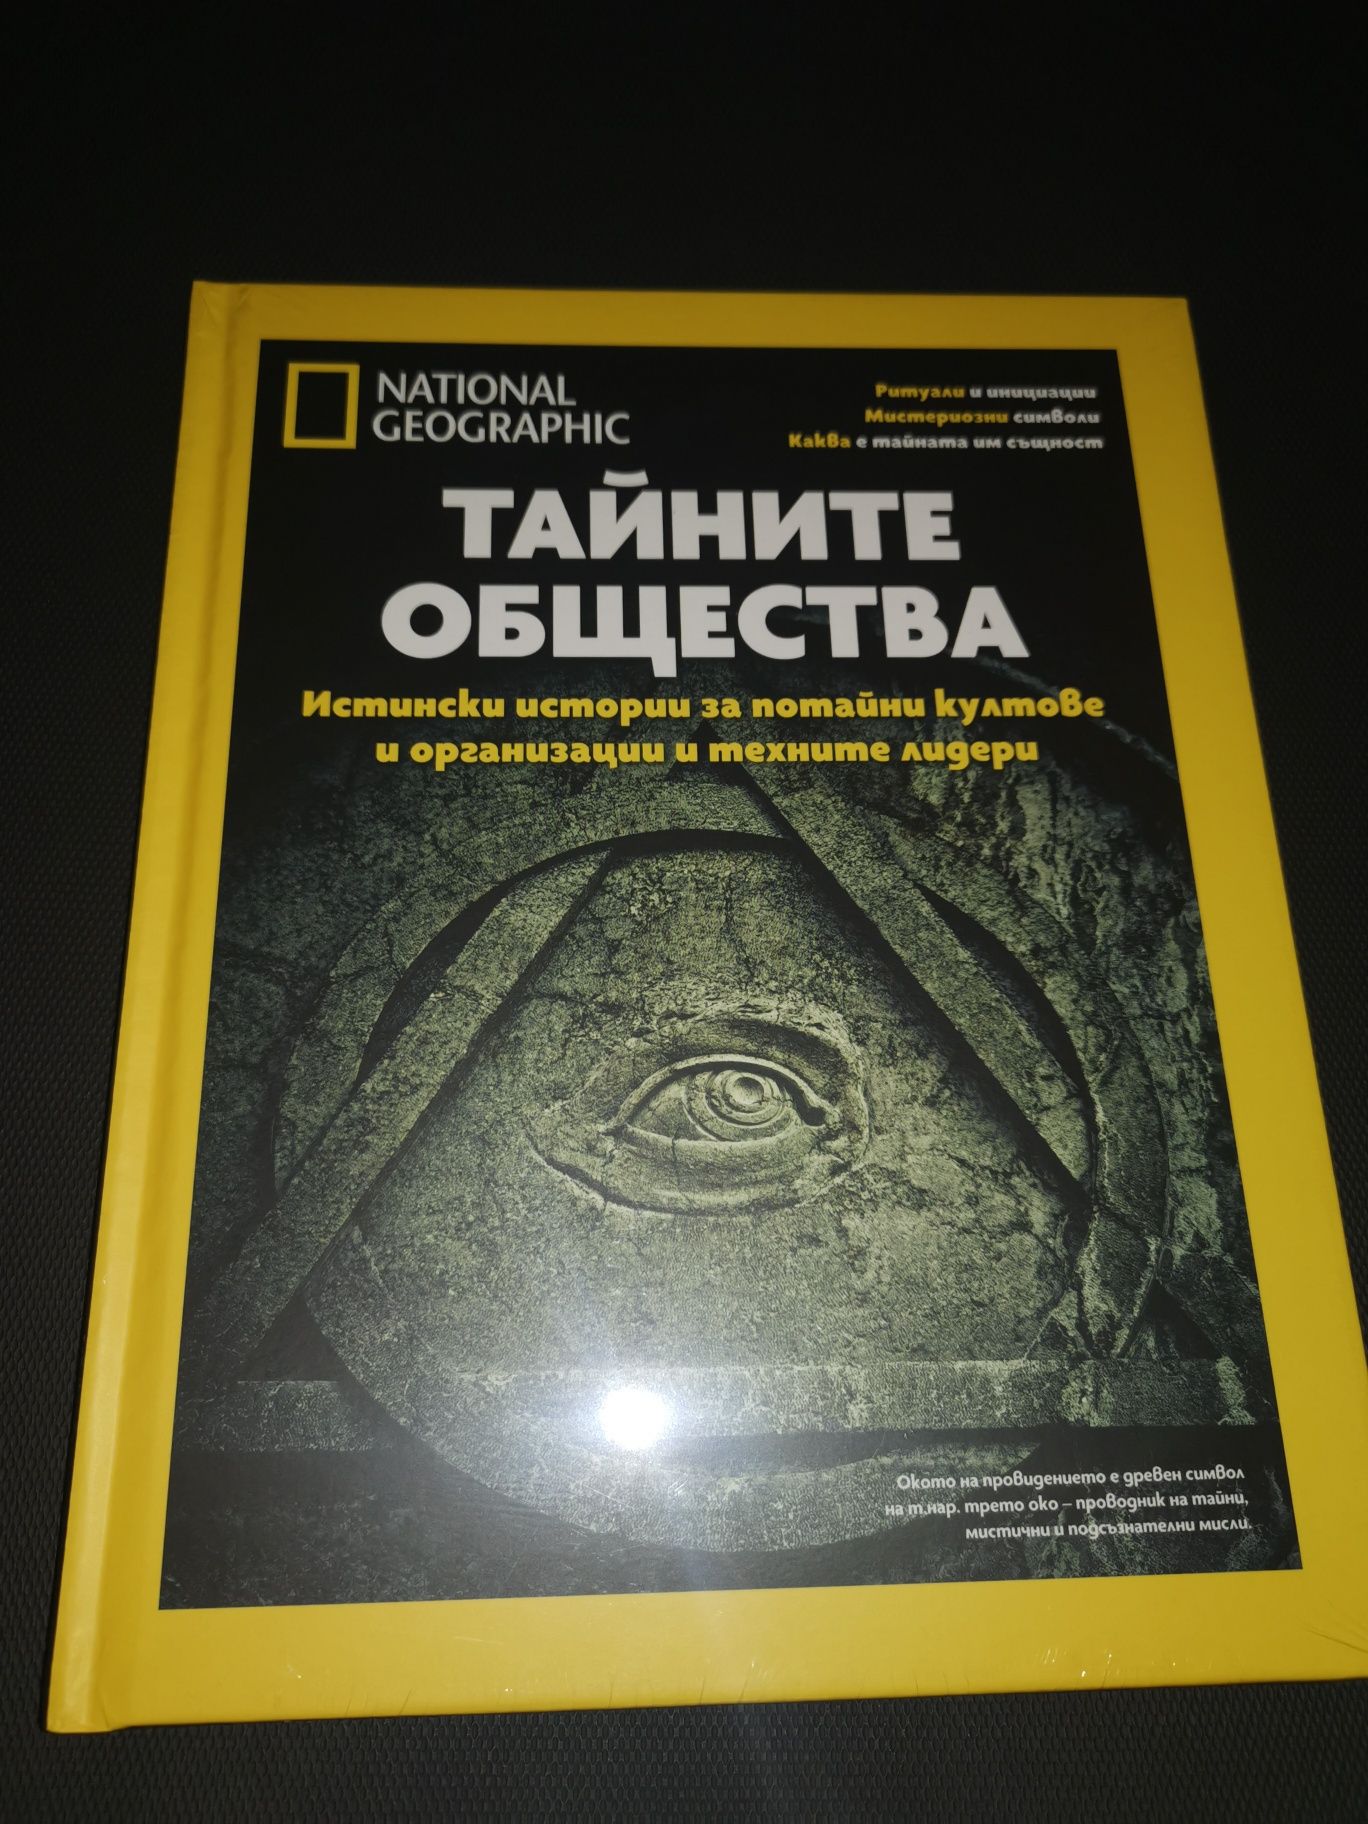 Тайните общества, специално издание на National Geographic